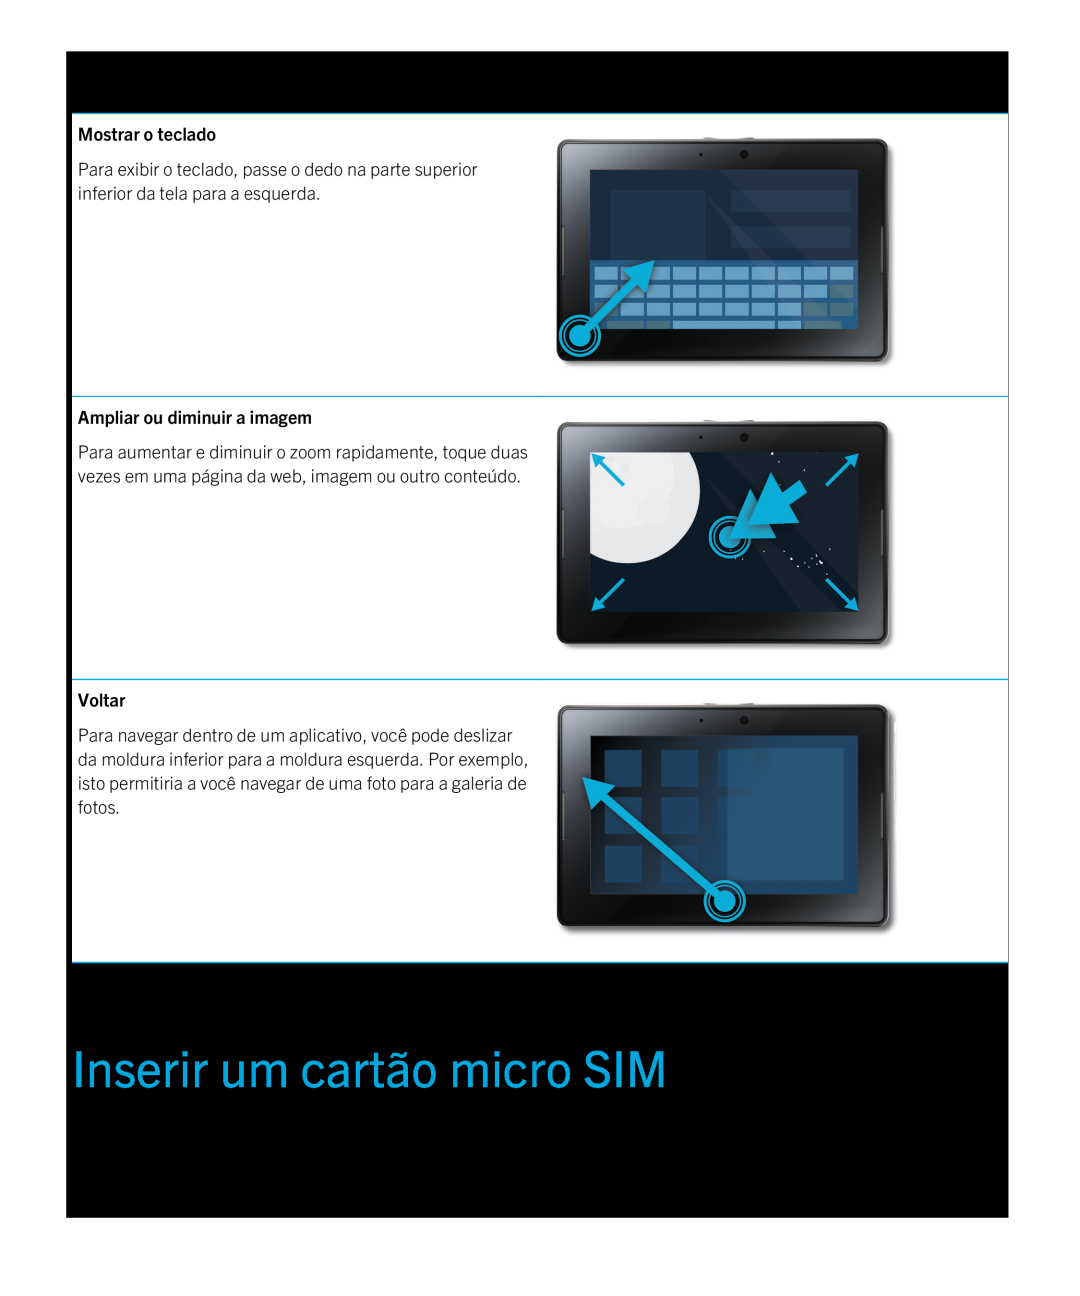 Blackberry 2.0.1 manual Inserir um cartão micro SIM, Mostrar o teclado, Voltar, Ampliar ou diminuir a imagem 